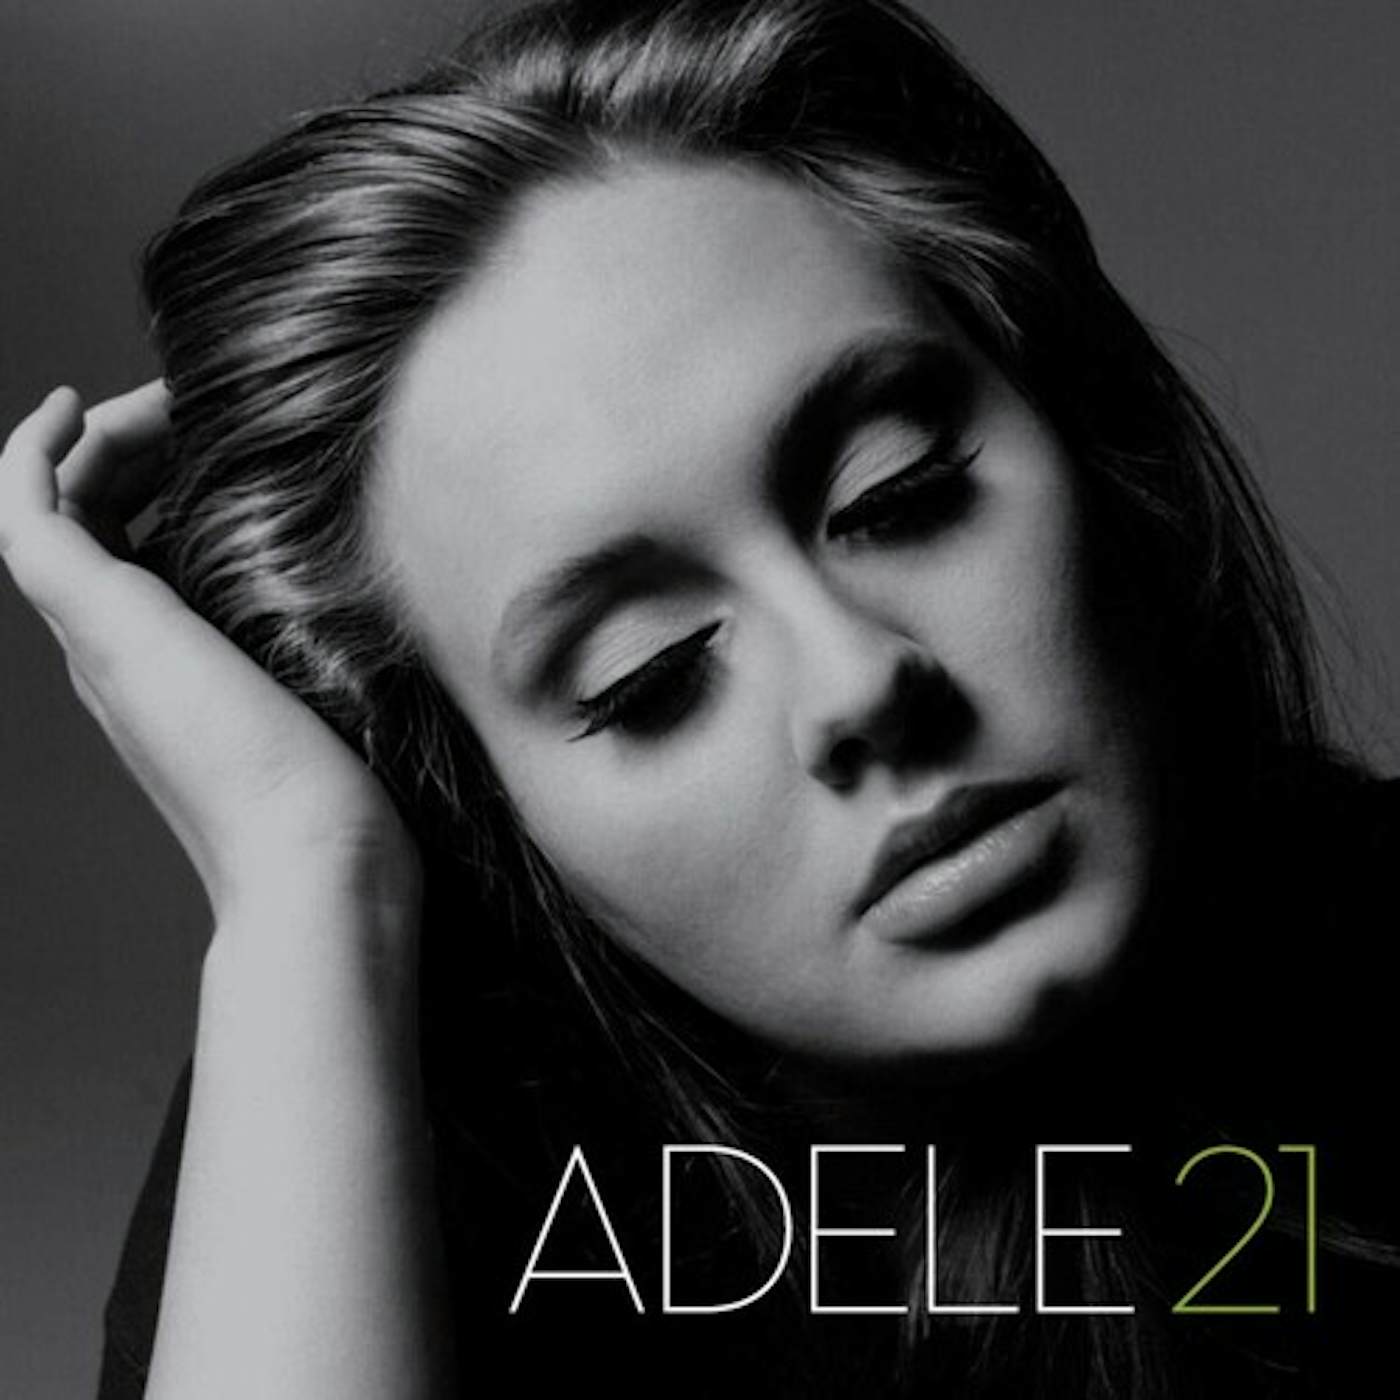 Adele 21 Vinyl Record